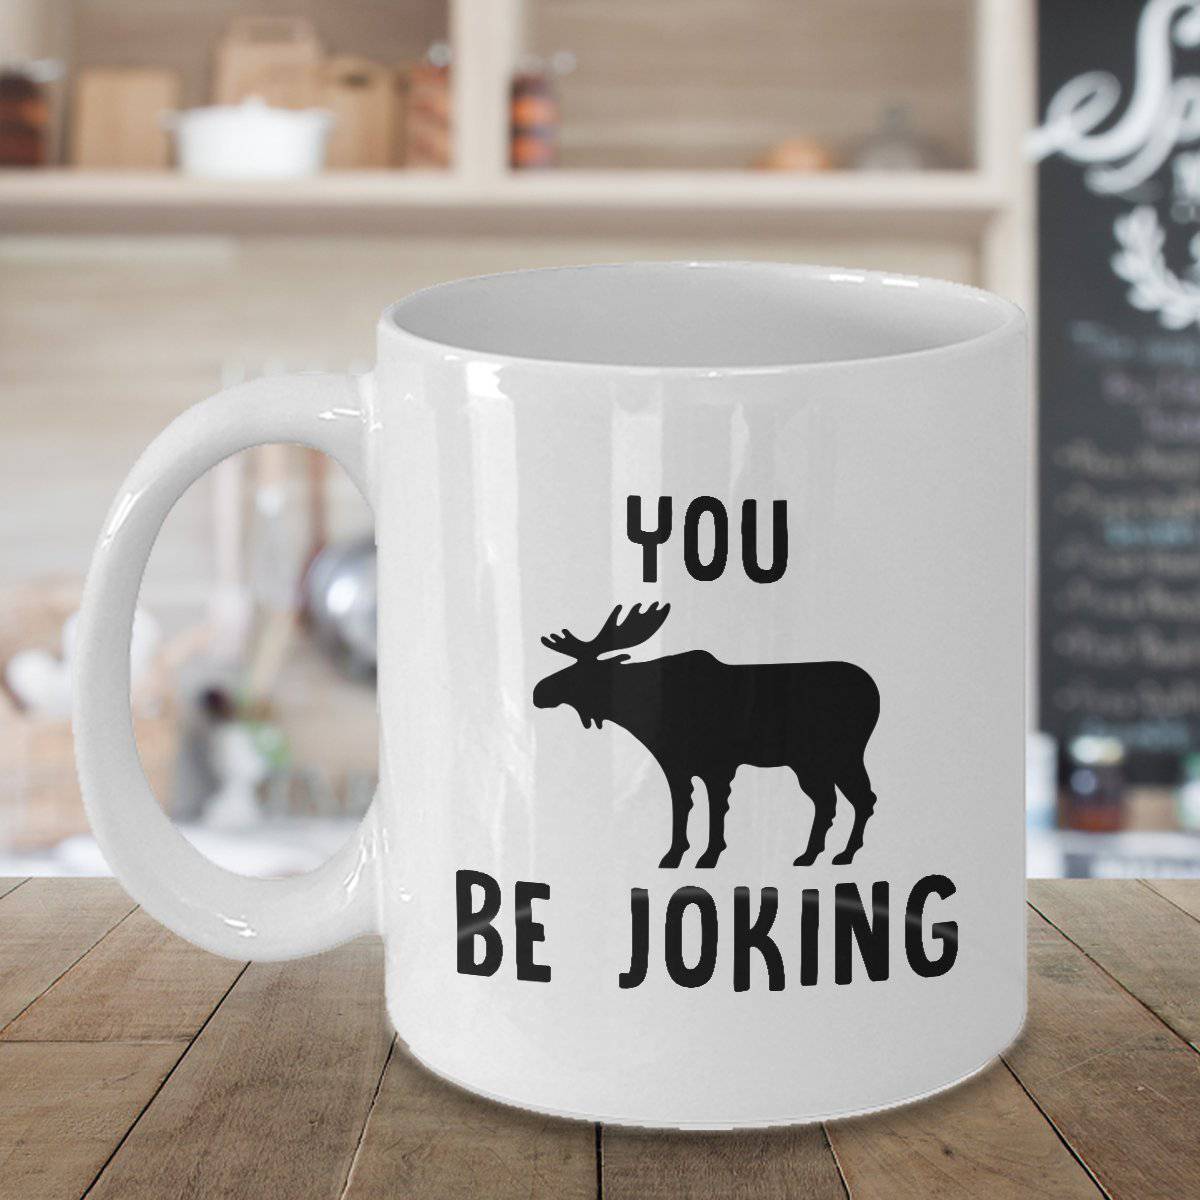 https://buymorecoffee.com/wp-content/uploads/2017/11/You-Moose-Be-Joking-Coffee-Mug3.jpg